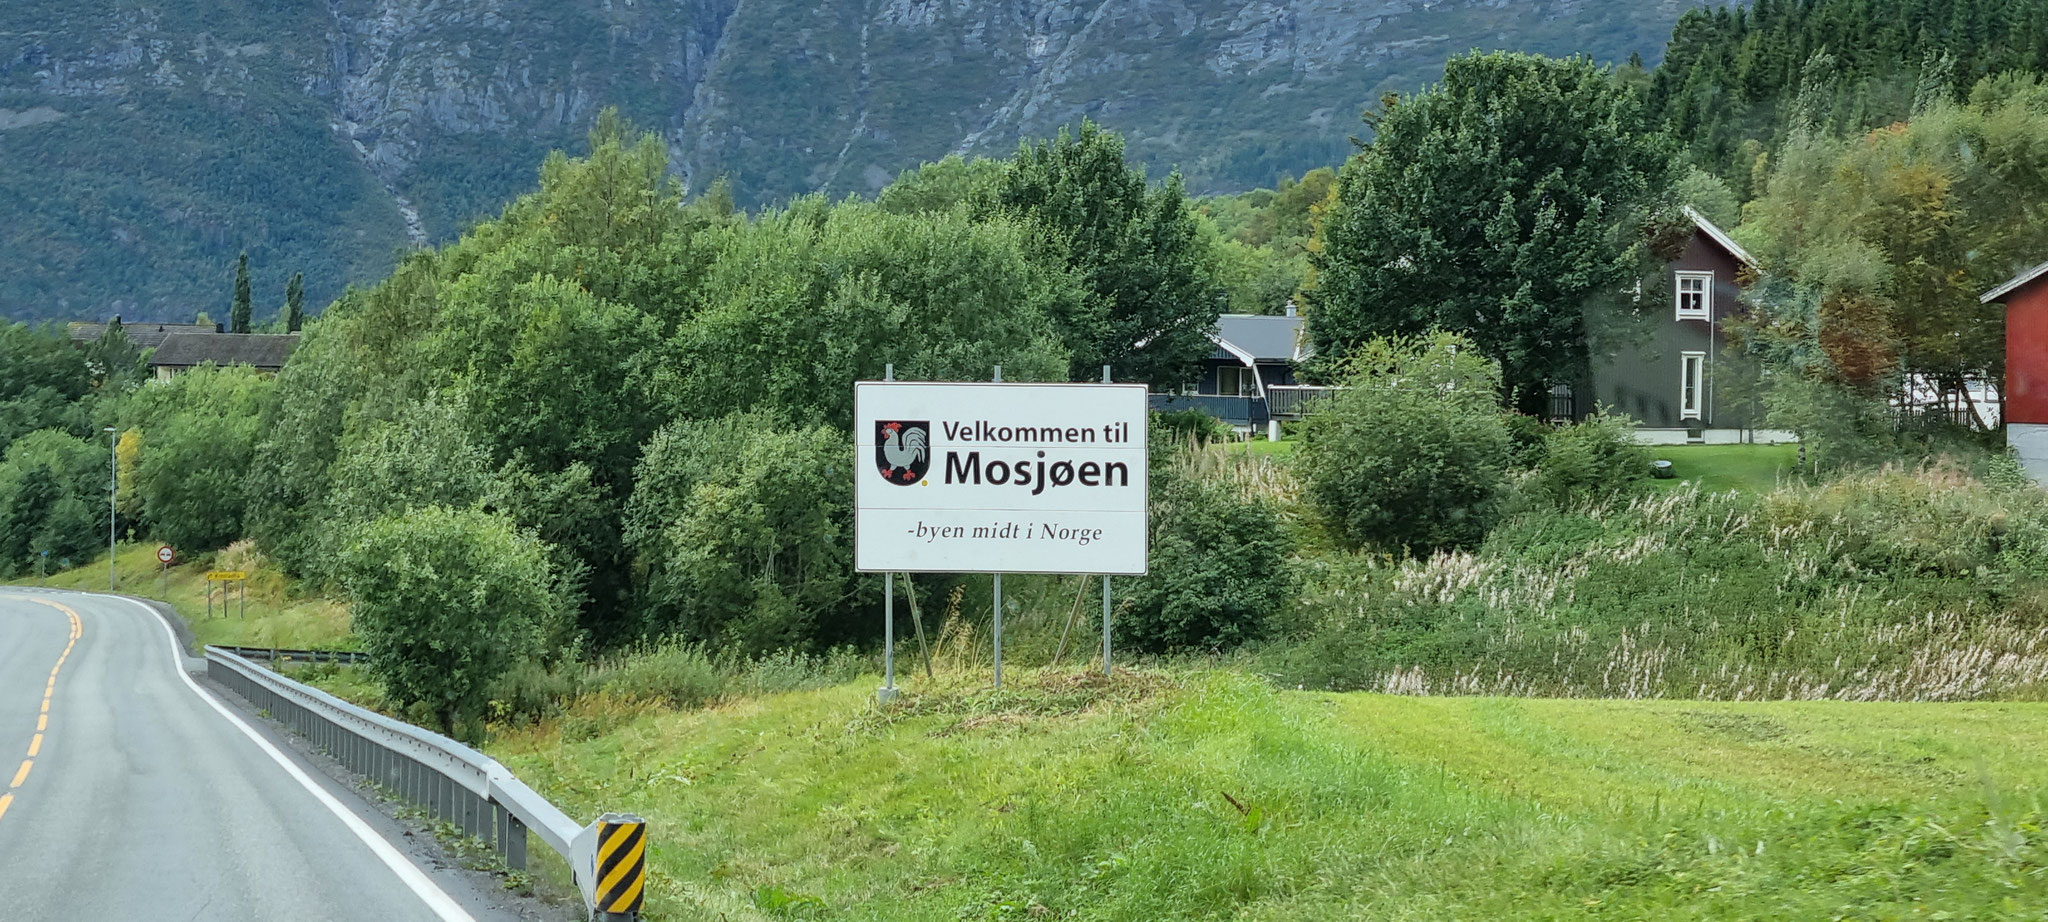 Wir kommen in Mosjøen an...